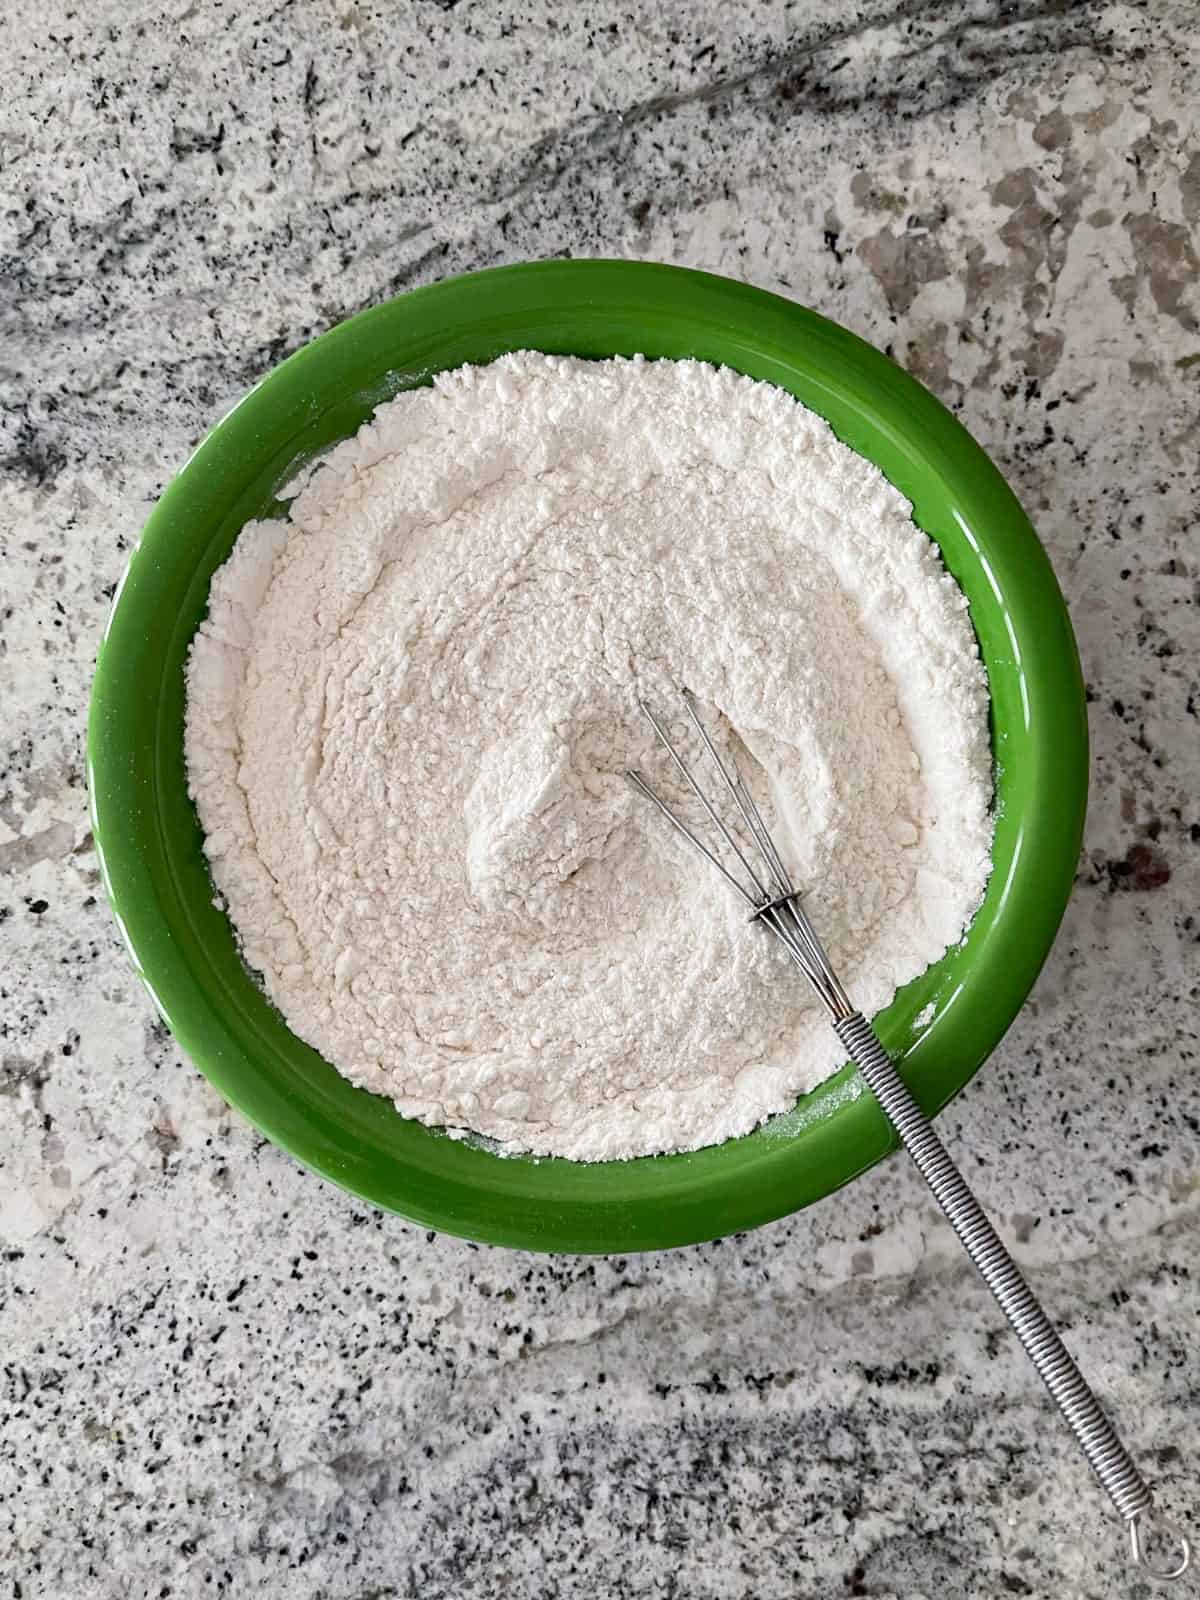 Whisking flour, baking powder and salt in green bowl.